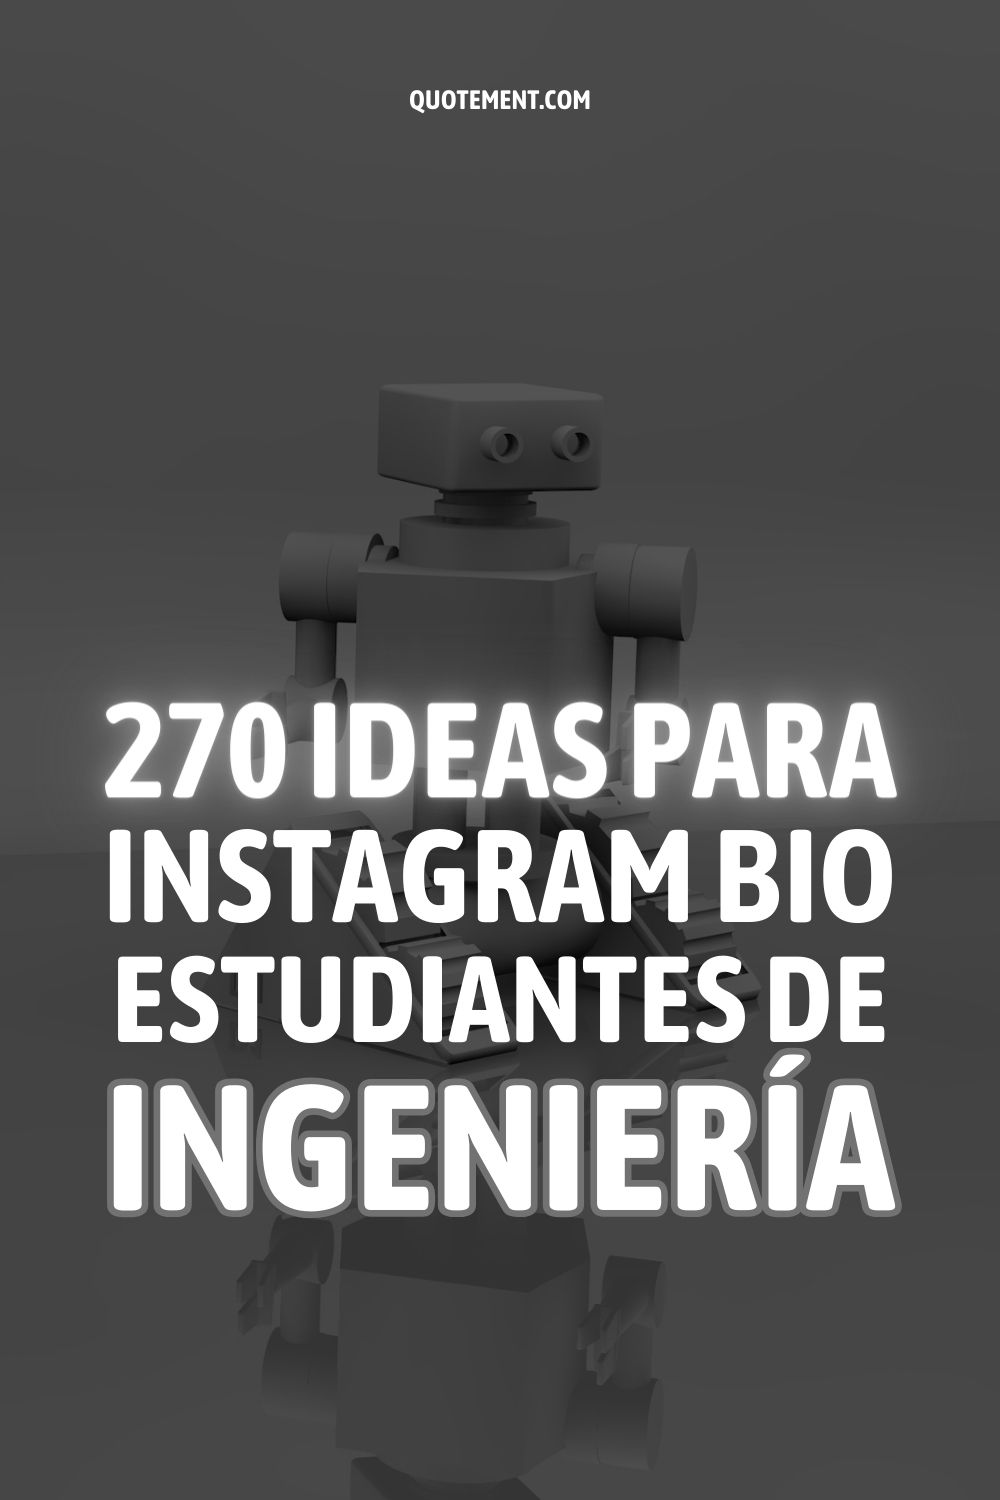 Biografía de Instagram para estudiantes de ingeniería 270 ideas pegadizas